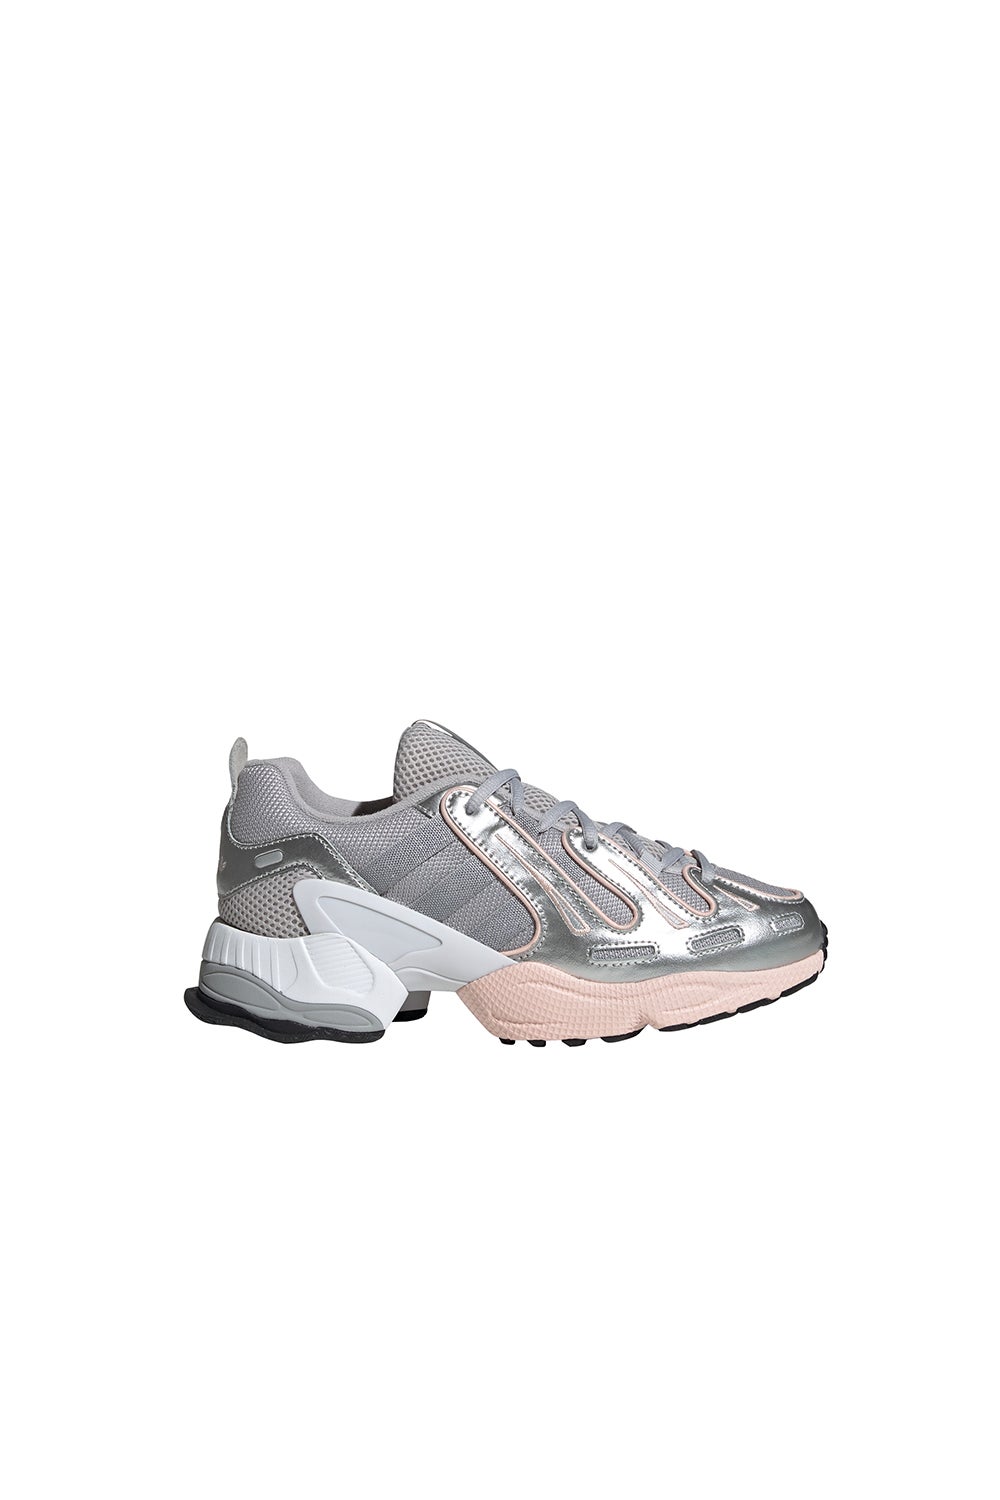 adidas eqt pink grey